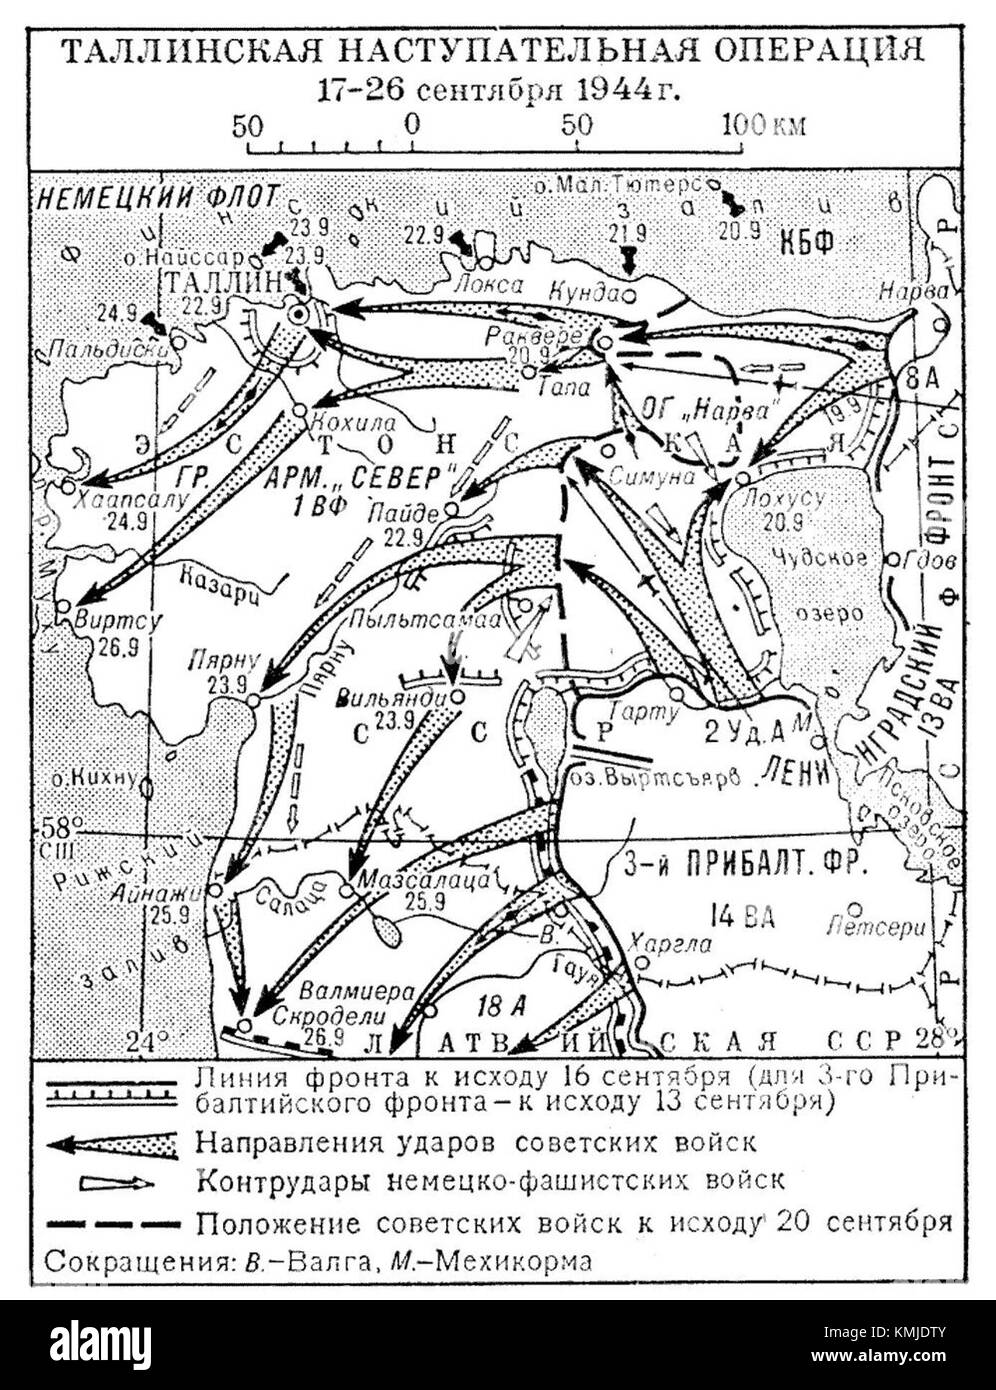 1944 события операции. Таллинская наступательная операция 1944 года. Таллинская наступательная операция 1944 карта. Освобождение Таллина в 1944 году. Освобождение Таллина 1944 карта.